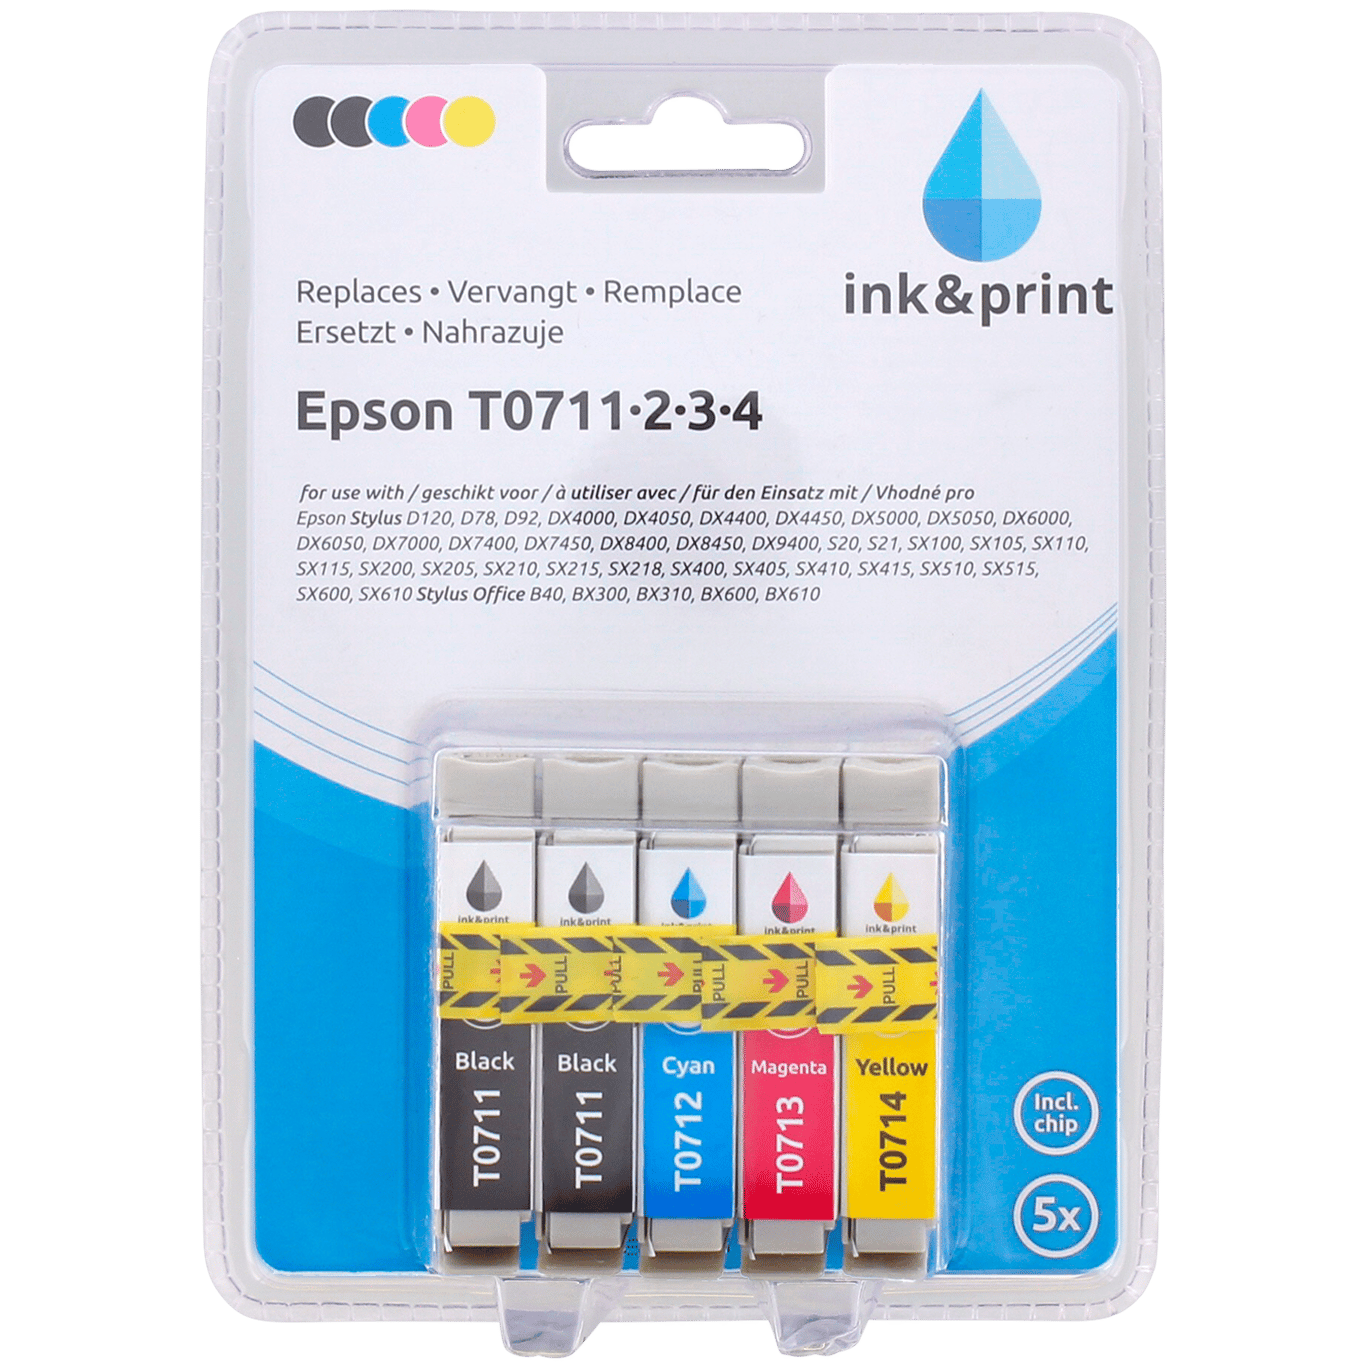 Ink & inktcartridge | Action.com